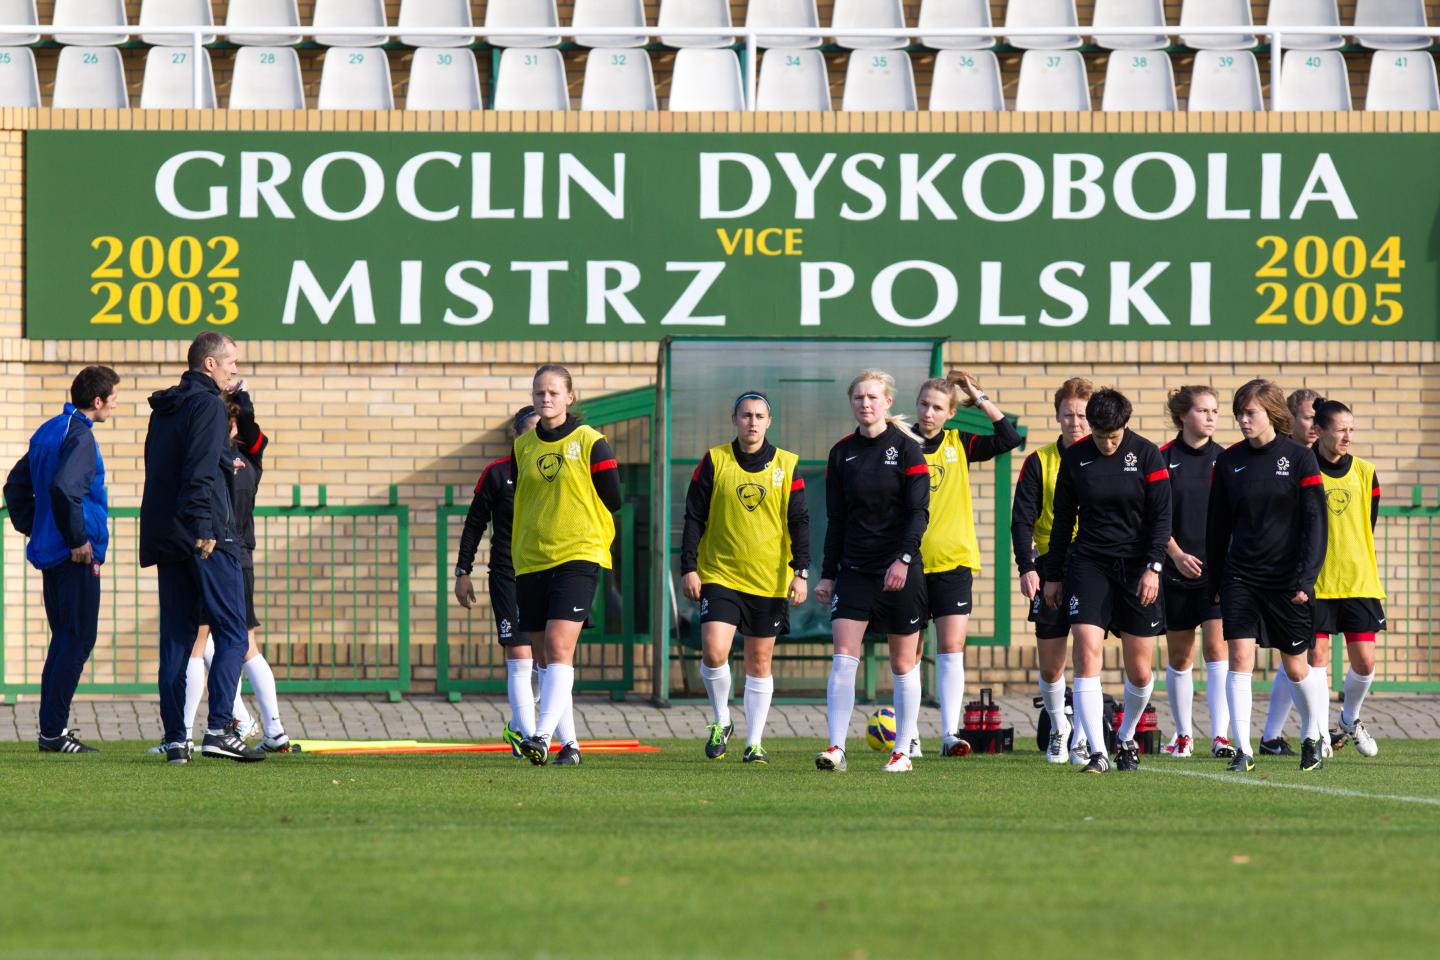 Stadion Groclin Dyskobolia Grodzisk Wlkp. (2013)